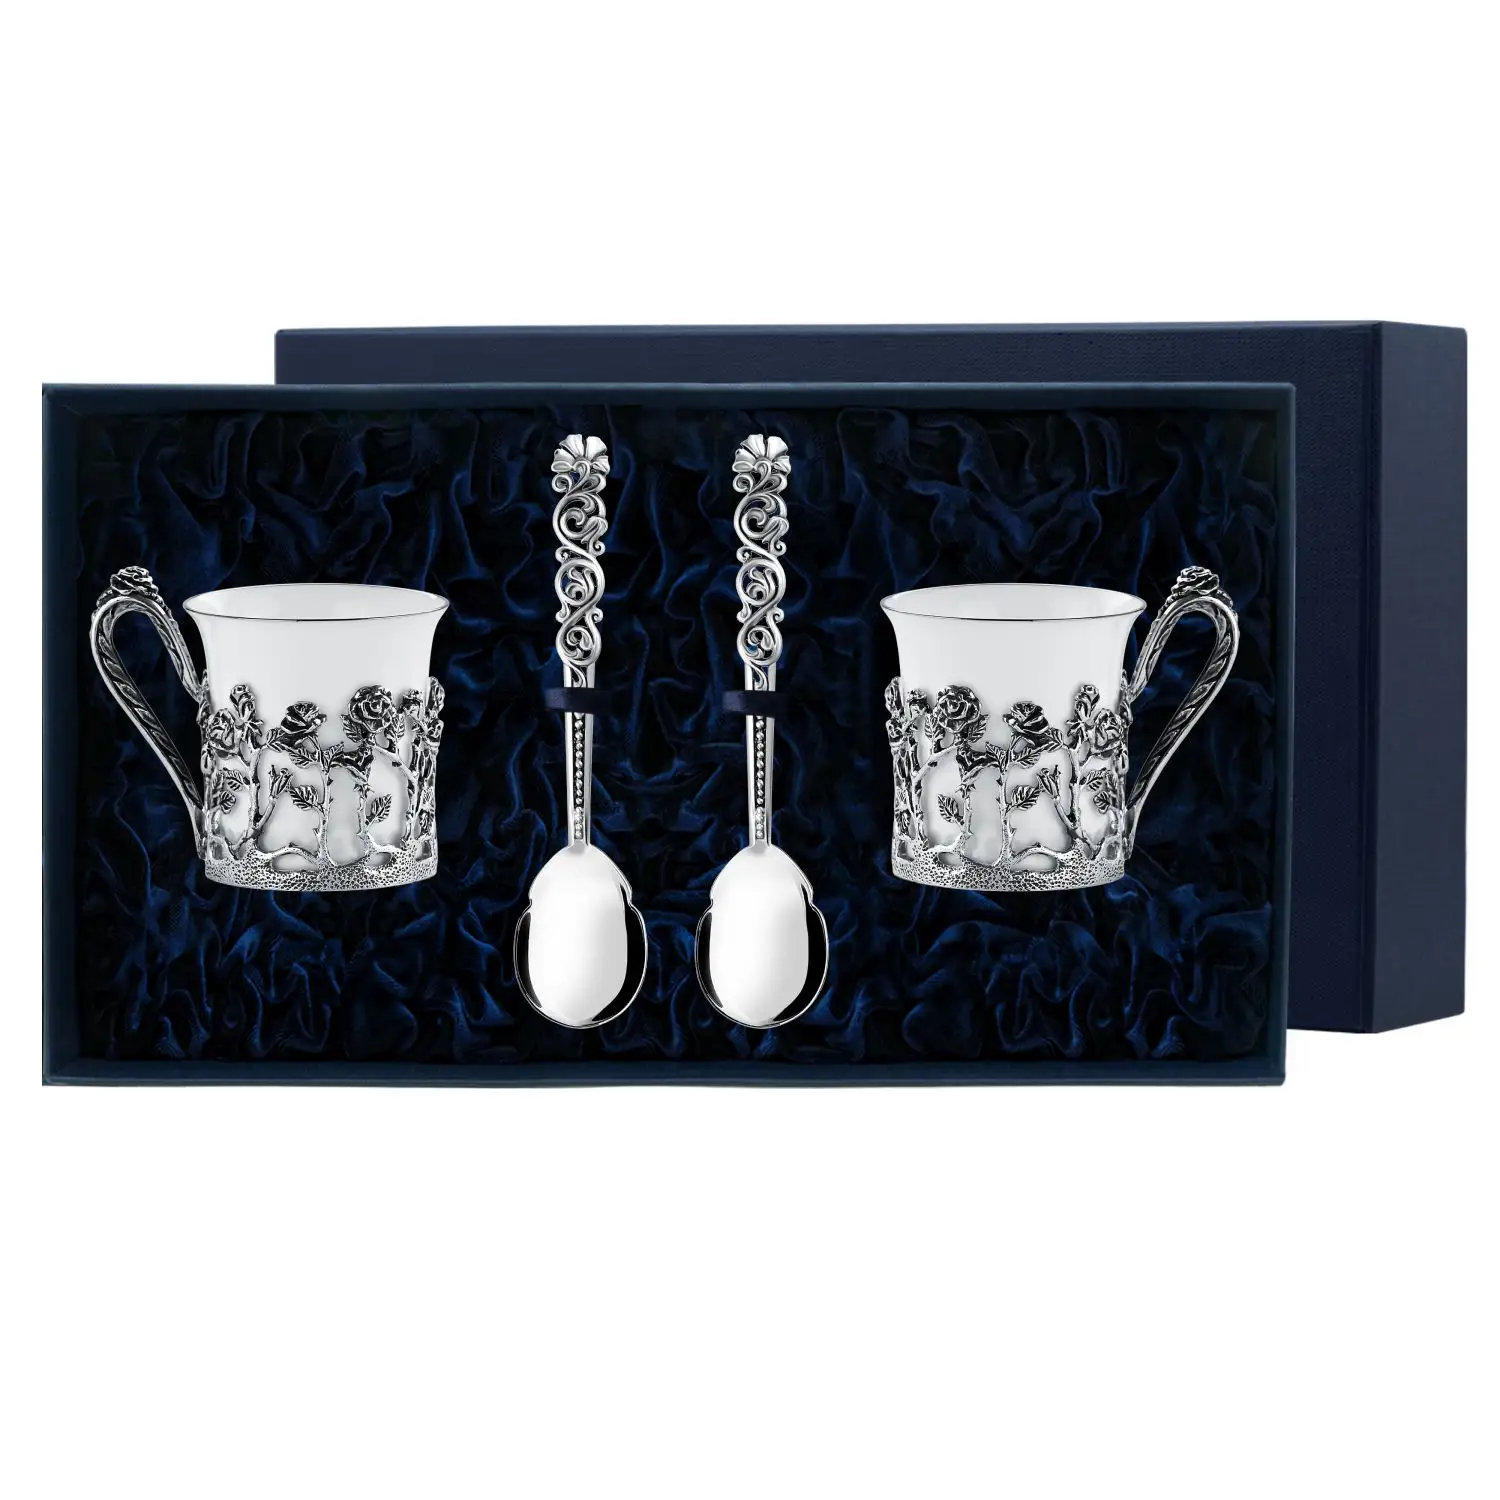 Набор кофейных чашек Роза: ложка, чашка (Серебро 925) набор кофейных чашек богема серебро 925